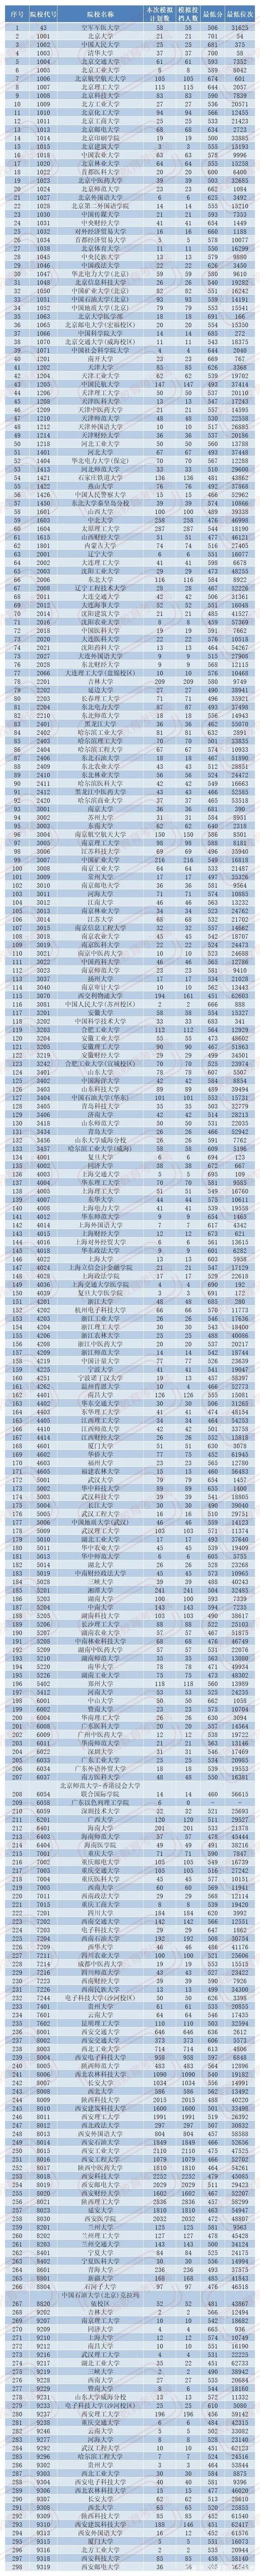 2020陕西省高考本科一批模拟投档录取分数线出炉 文科最低681分